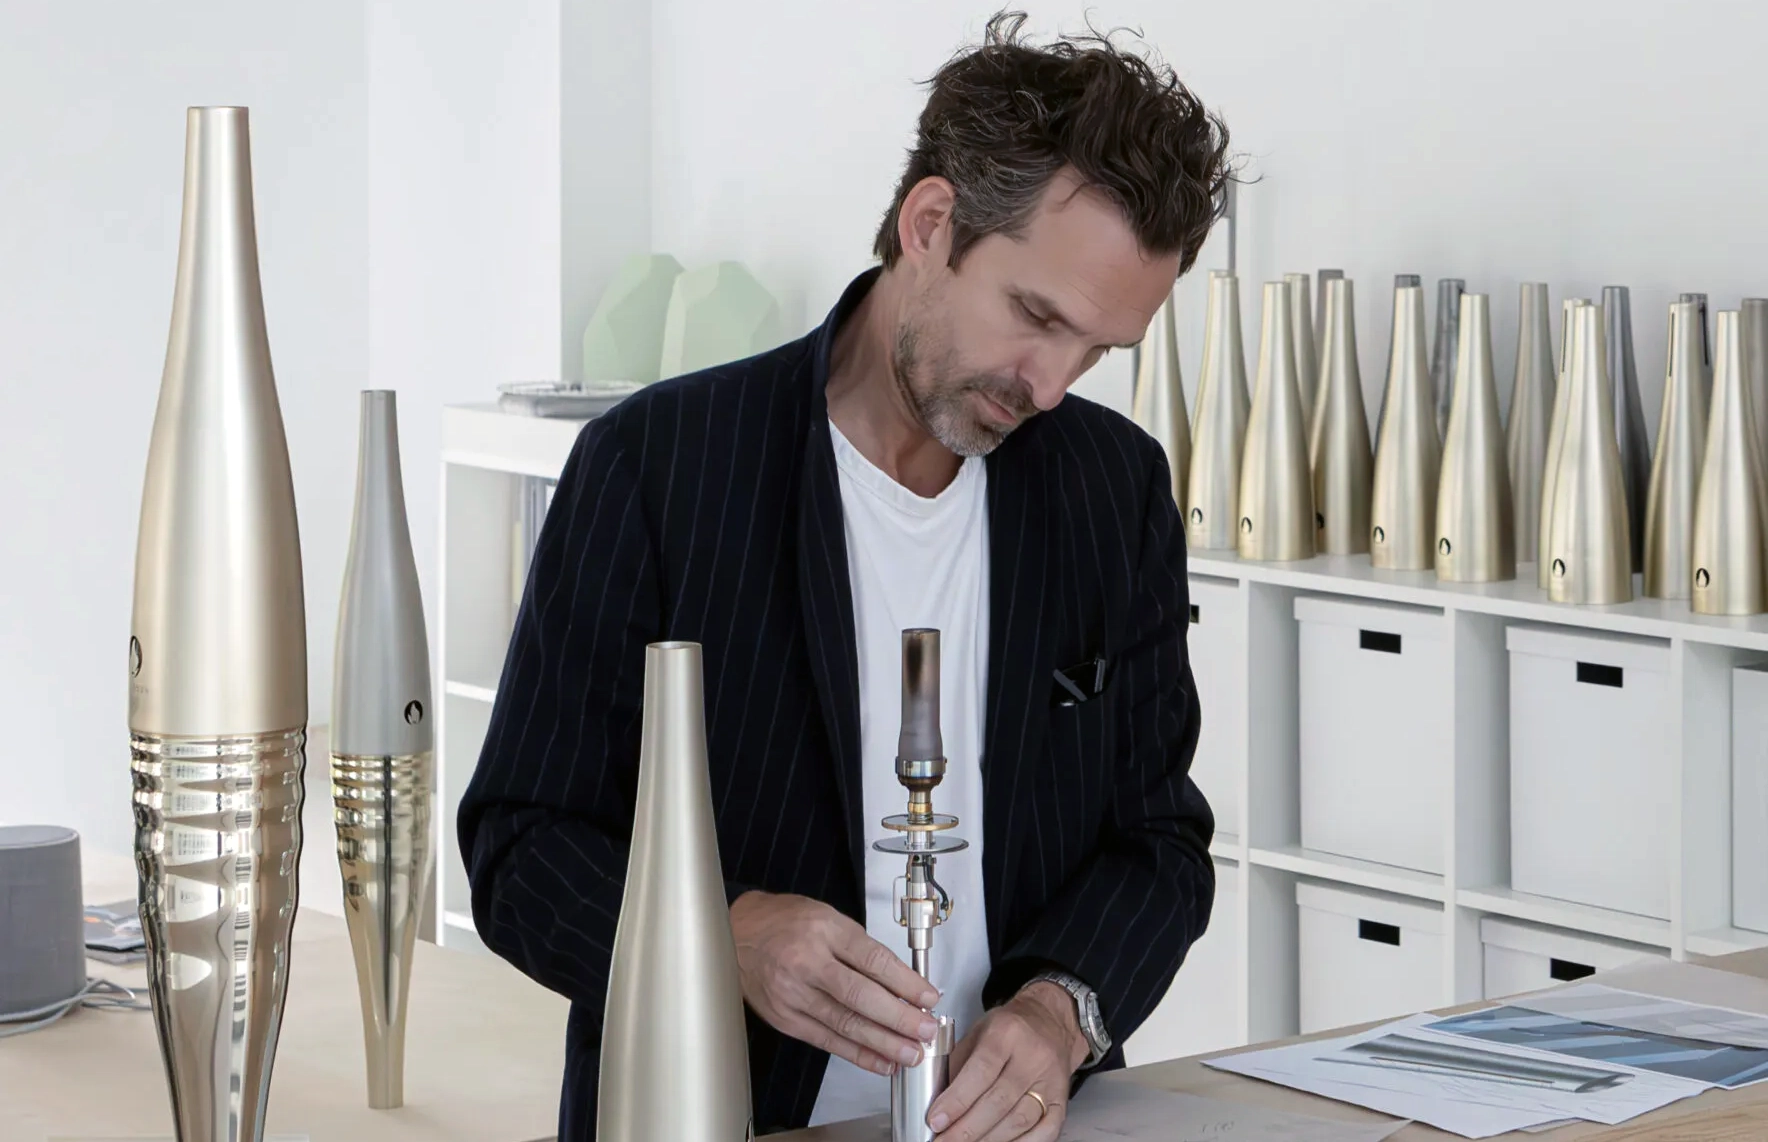 Le designer Mathieu Lehanneur en train de monter le système d'inflammation de la torche olympique dans son atelier de design (nombreuses torches stockées autour de lui). 